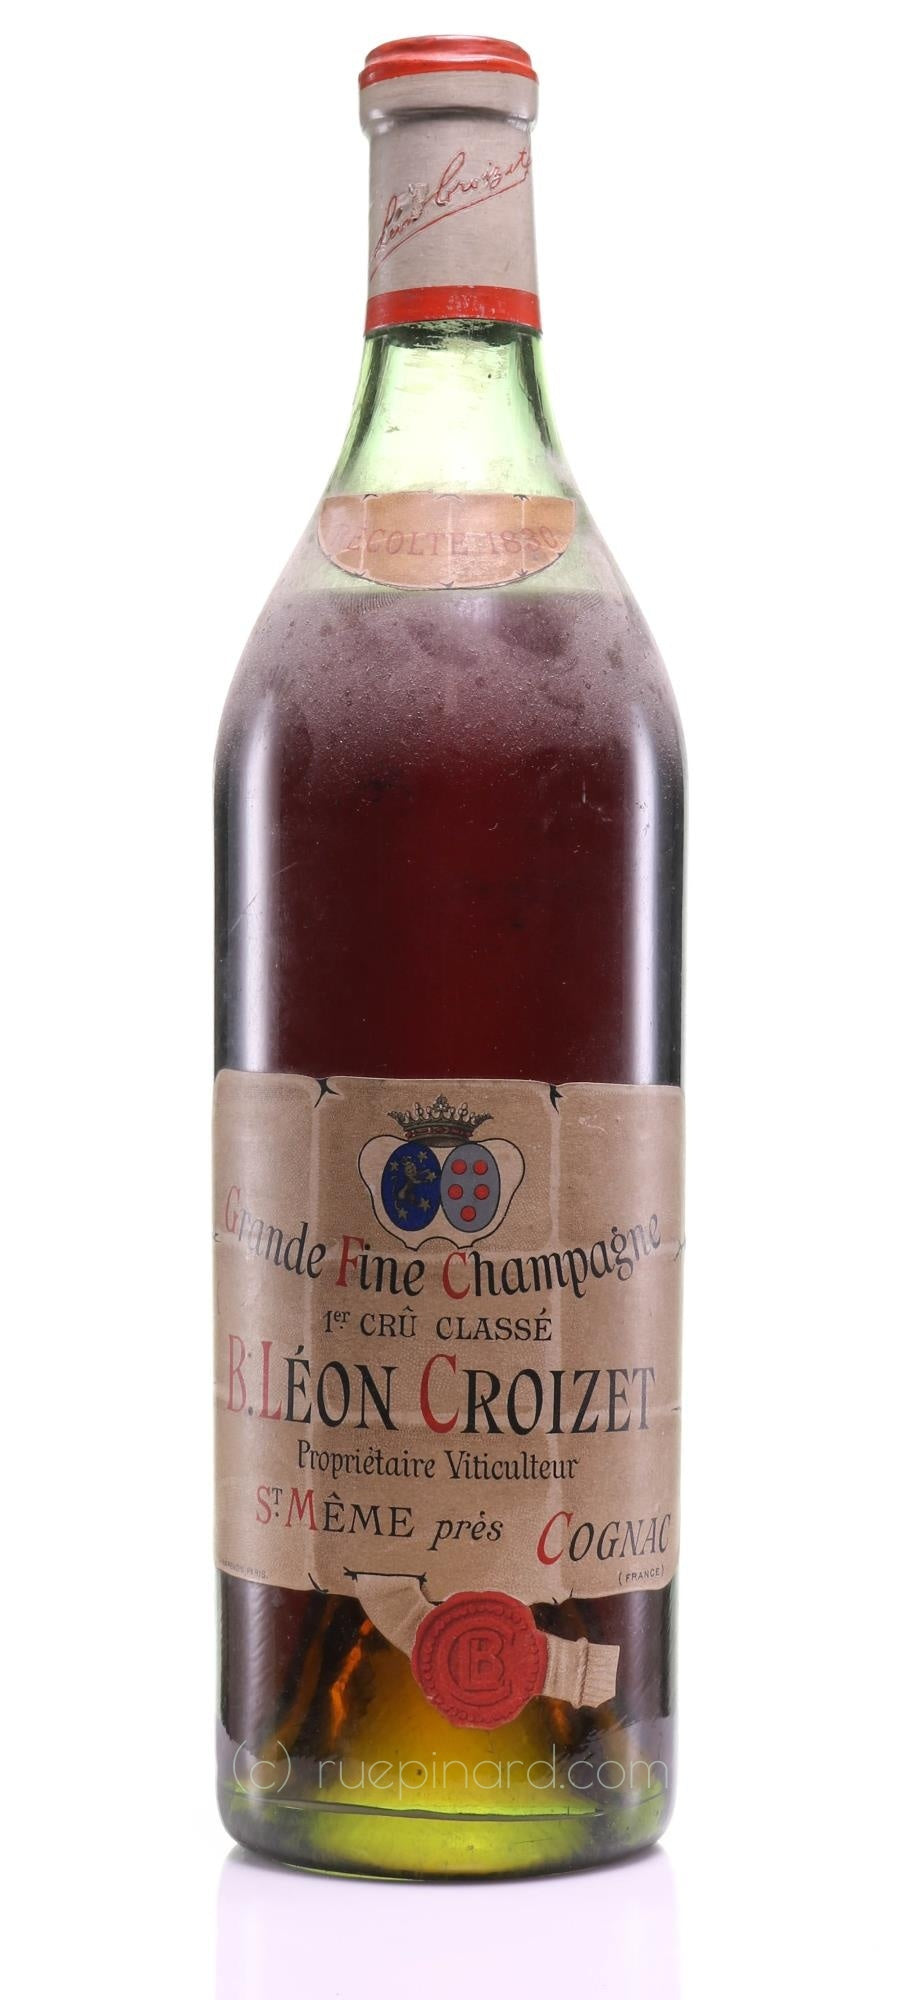 Croizet 1830 Grande Champagne Cognac 1er Cru Classé Grande Fine Champagne - Rue Pinard